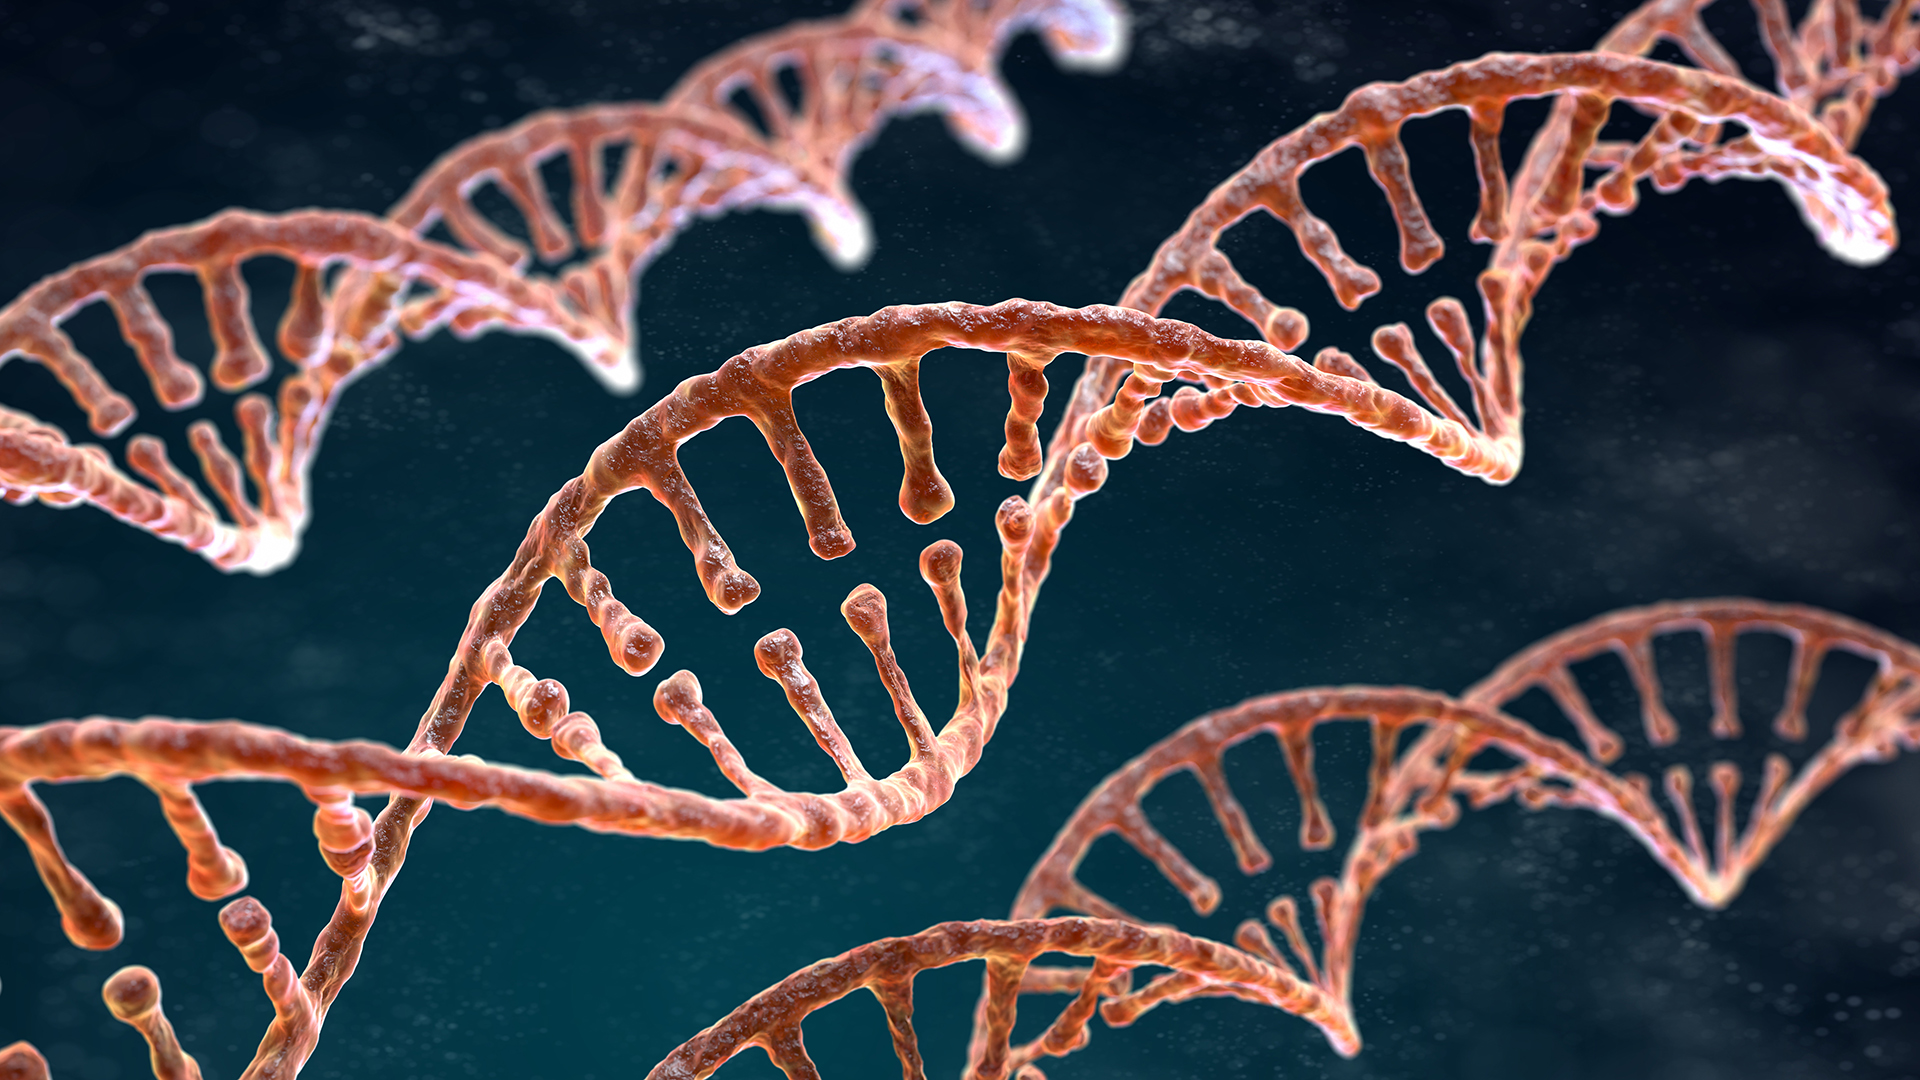 Mitos y verdades sobre las pruebas de ADN y su relación con la salud